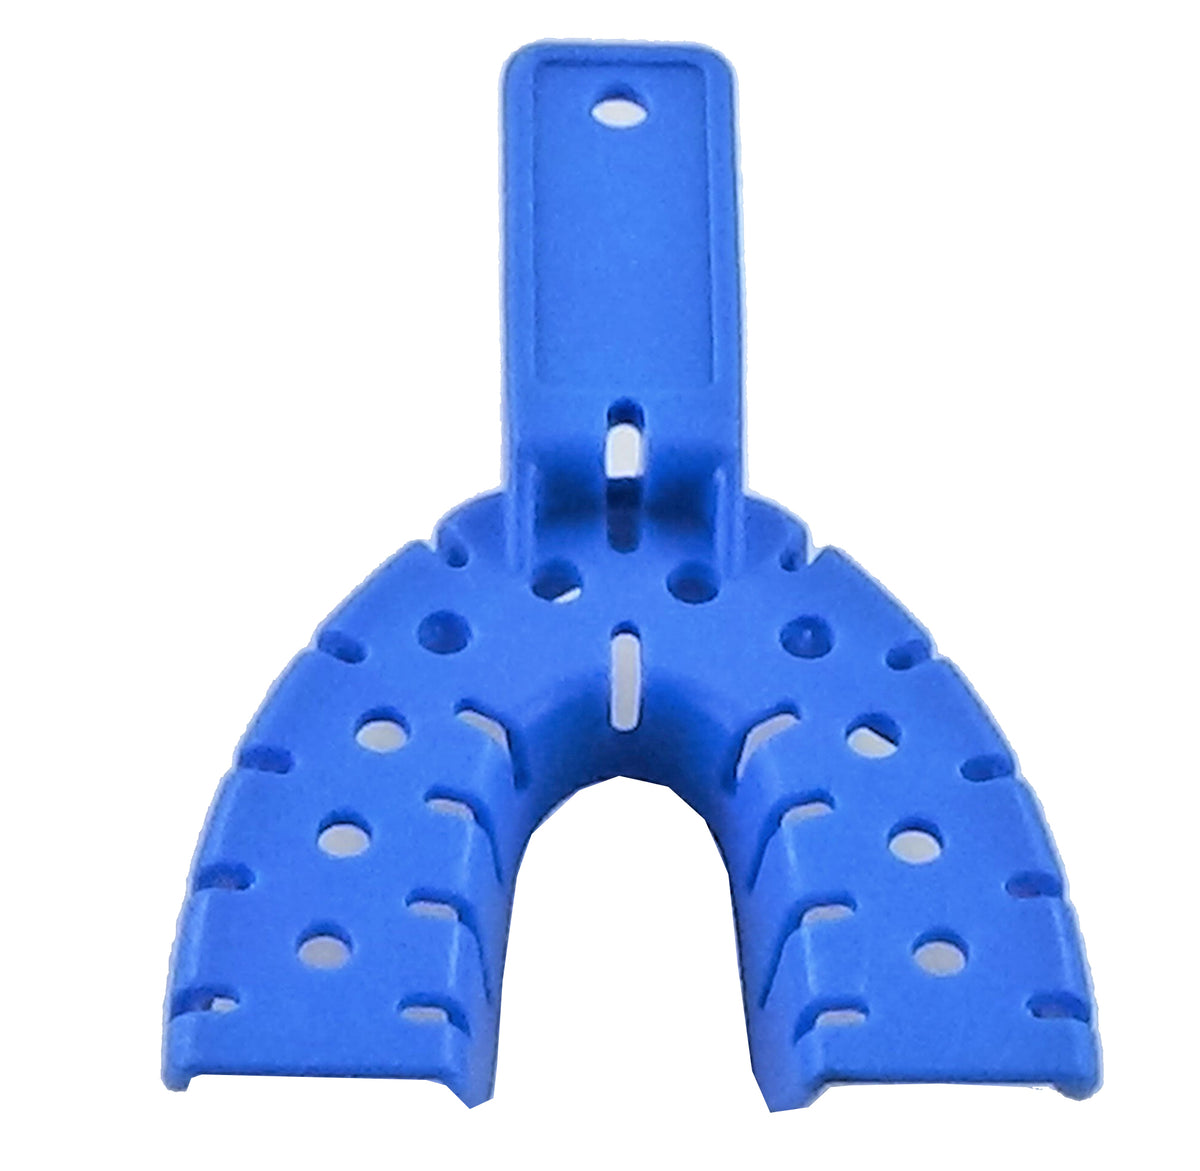 DUX Dental Flat Tray, Size F (Mini) - Seafoam, Plastic, 9-5/8' x 6-5/8' x  7/8' - Dental Wholesale Direct